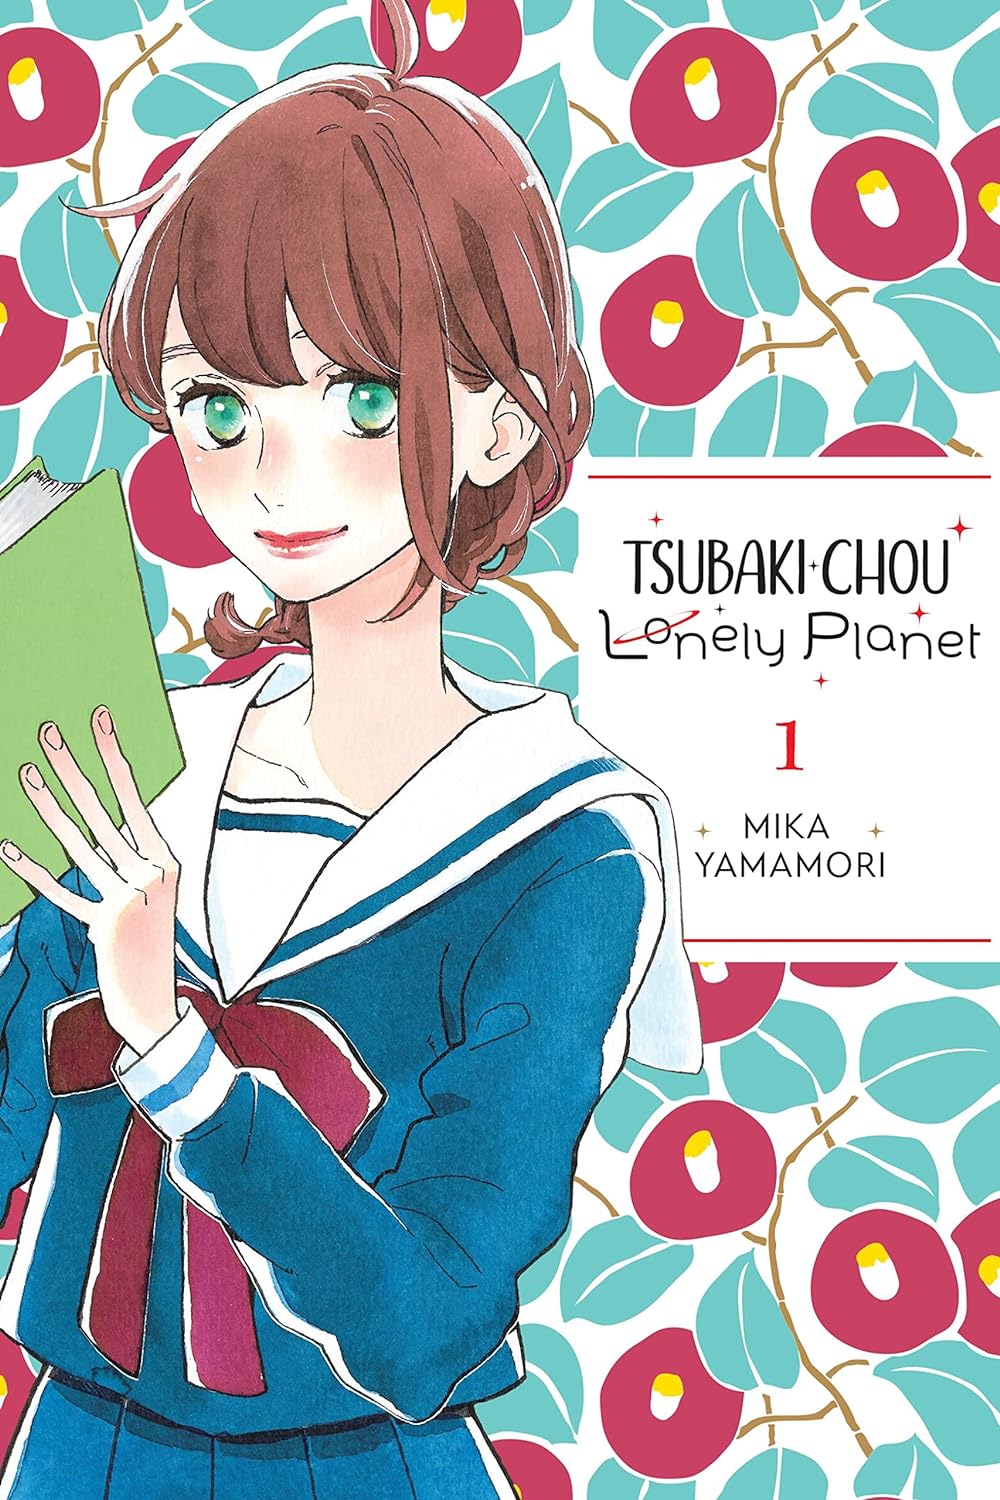 Tsubaki-Chou Lonely Planet- Book 1 Review